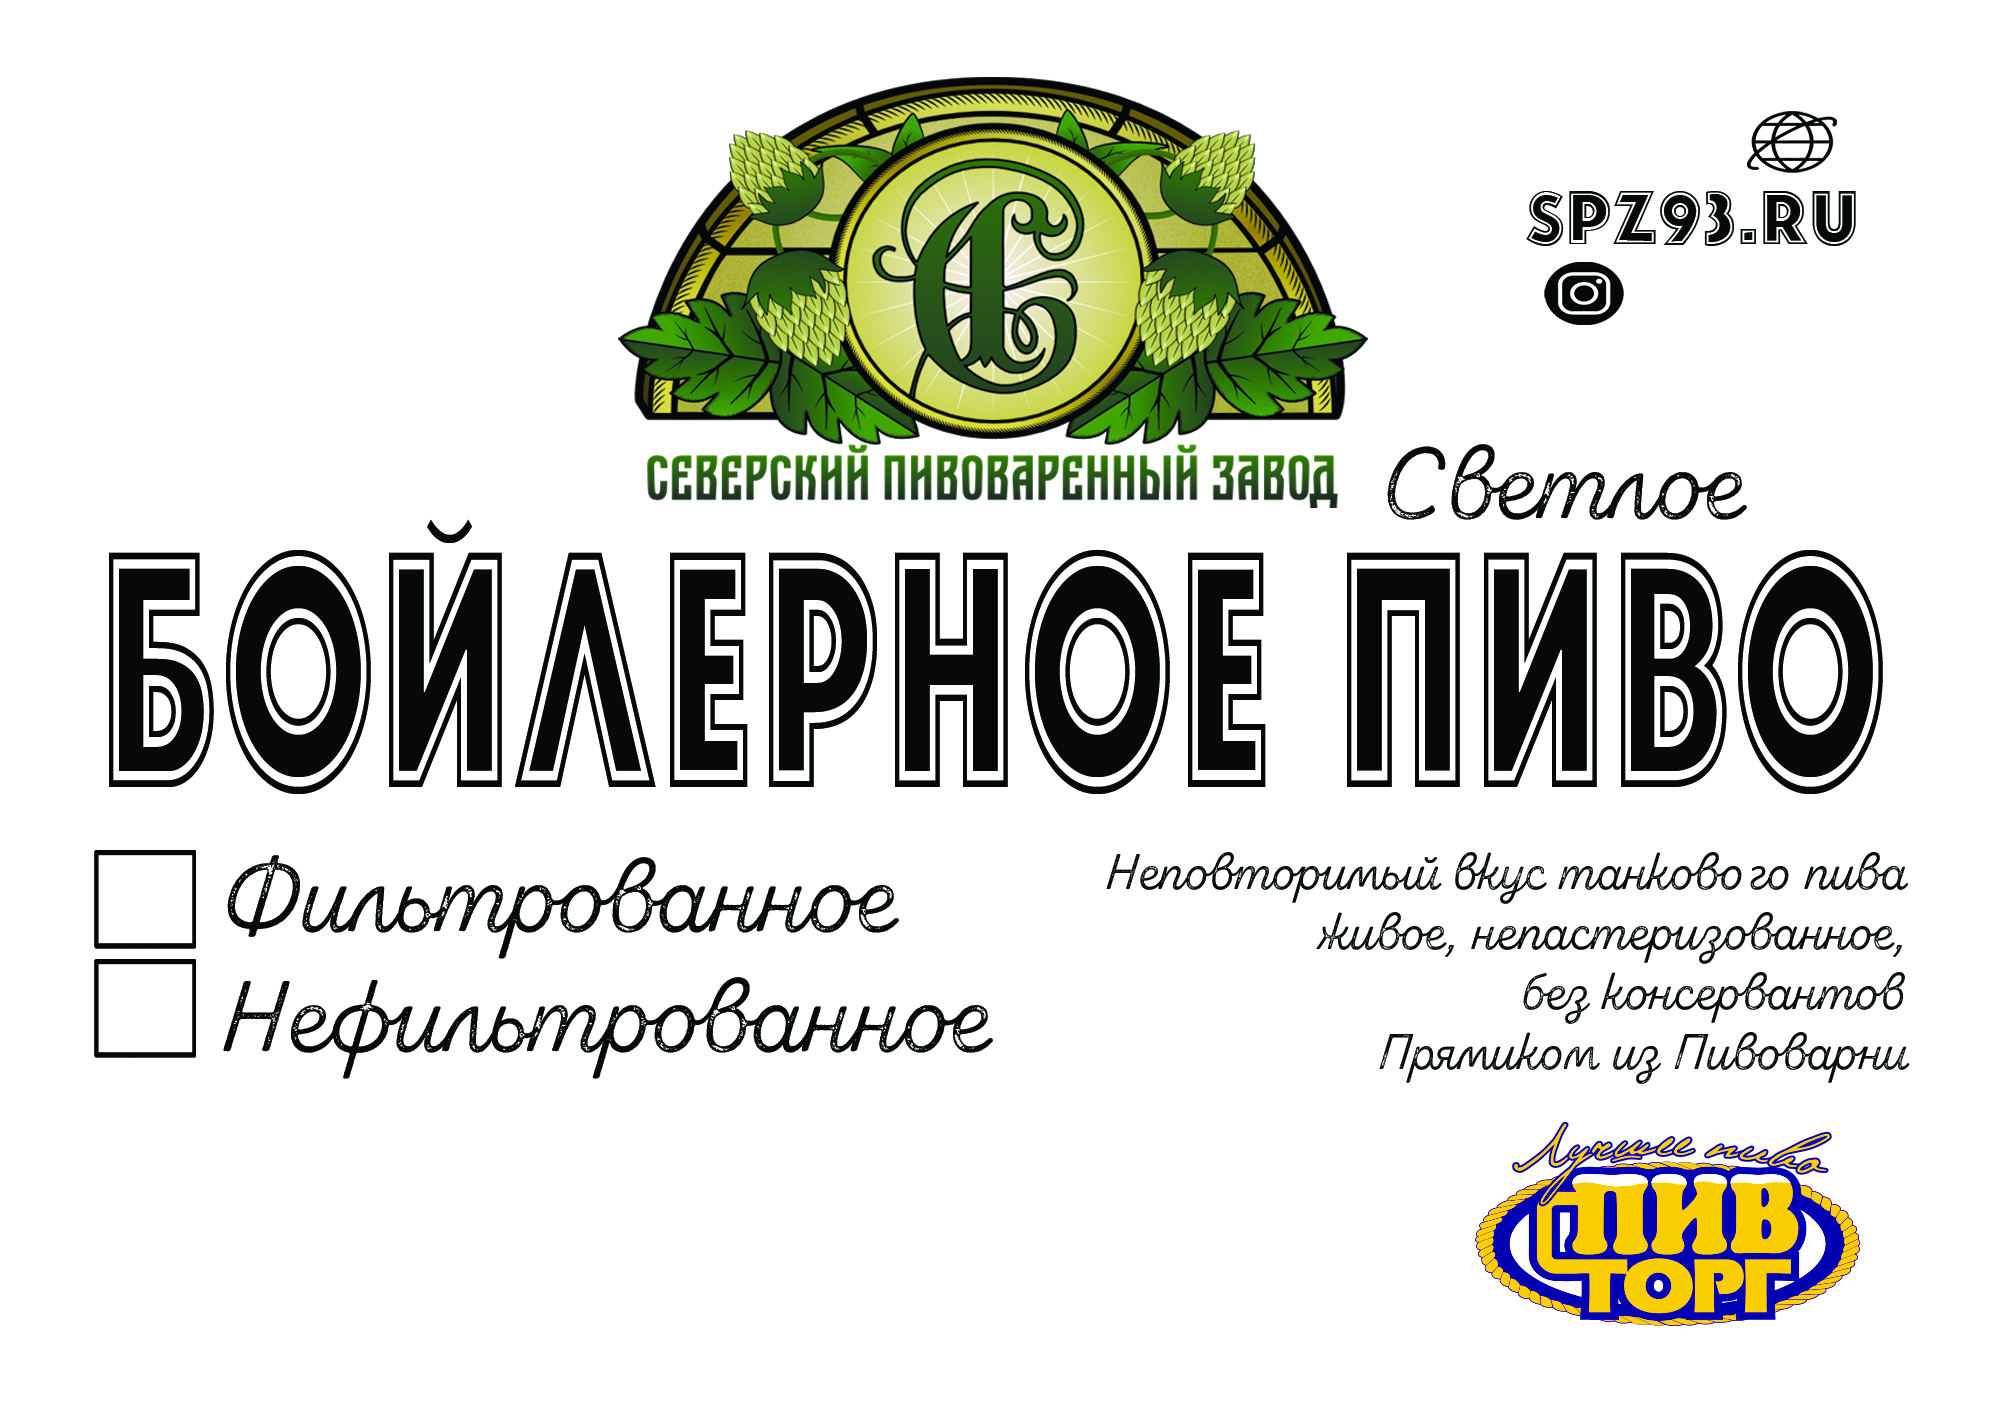 Банку Трехлитровую Пива Купить В Москве